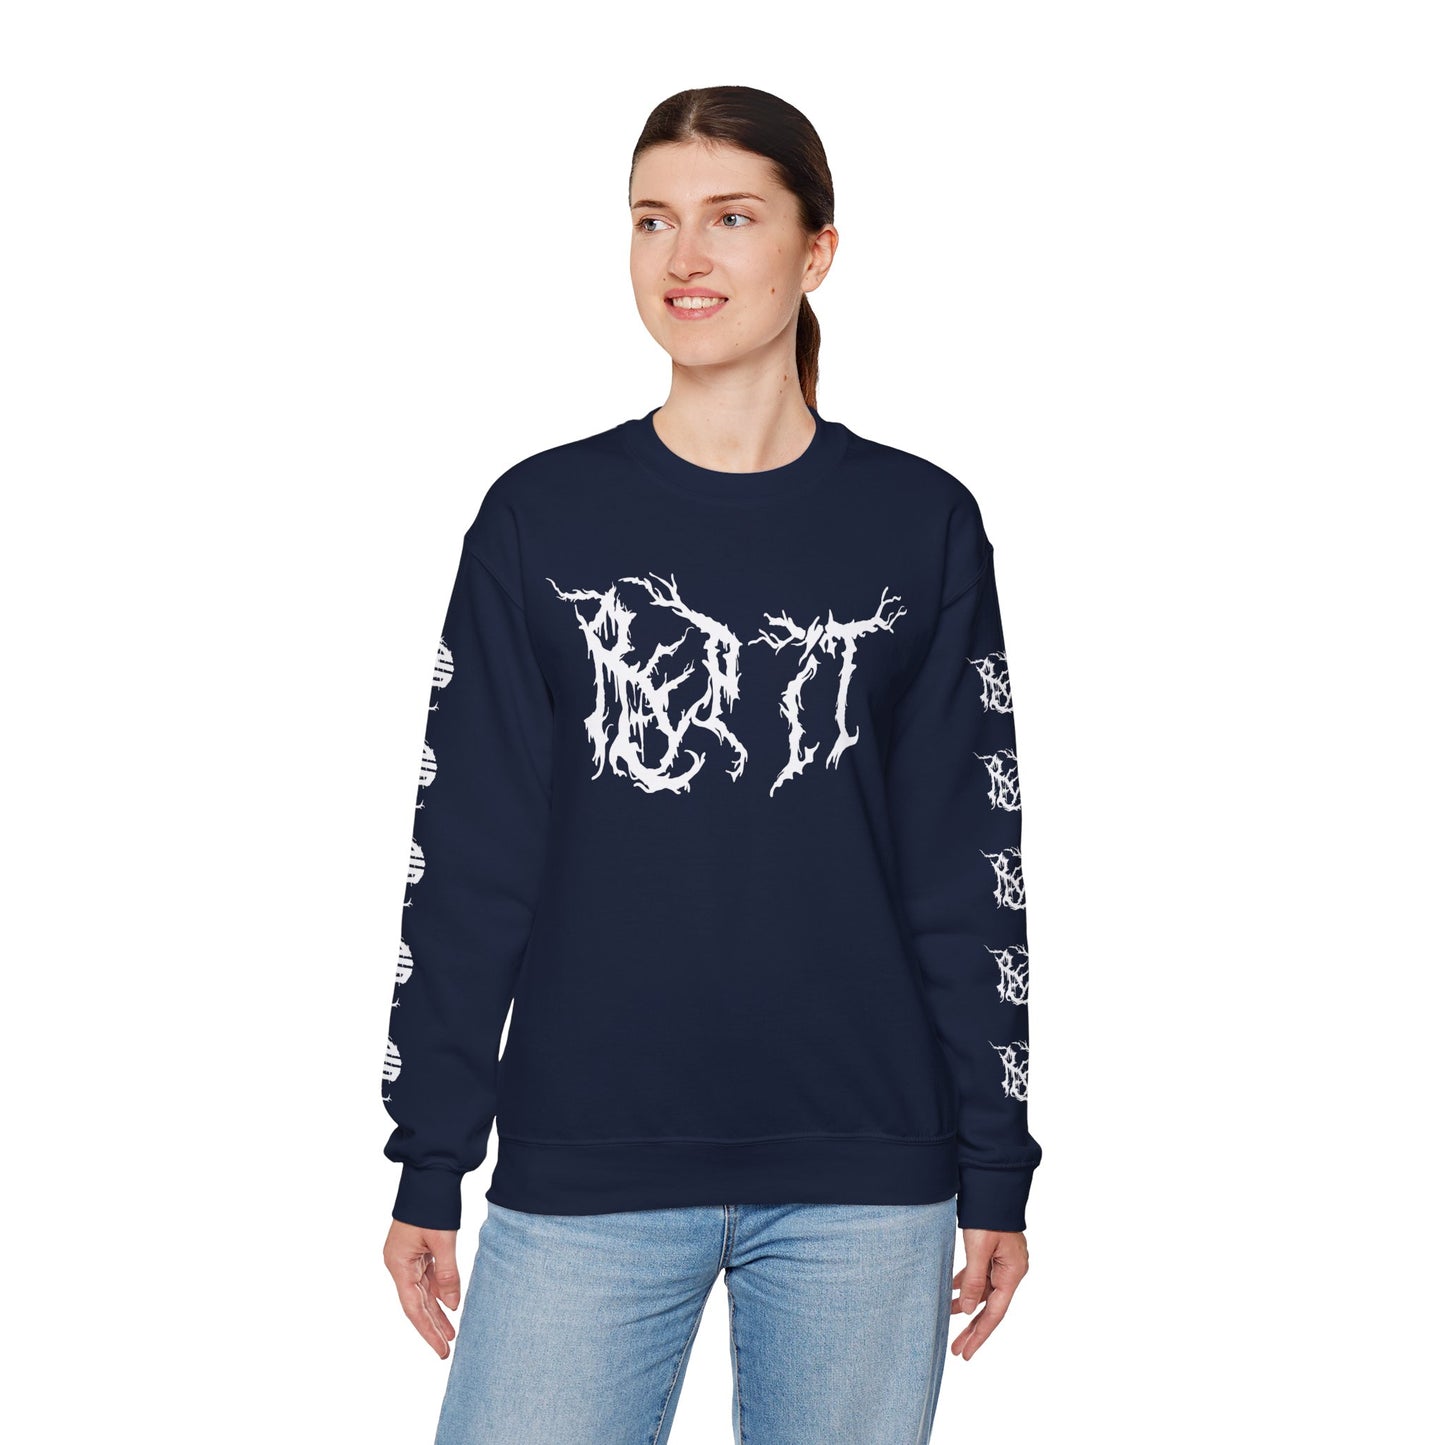 RPT Metal Crew Sweatshirt